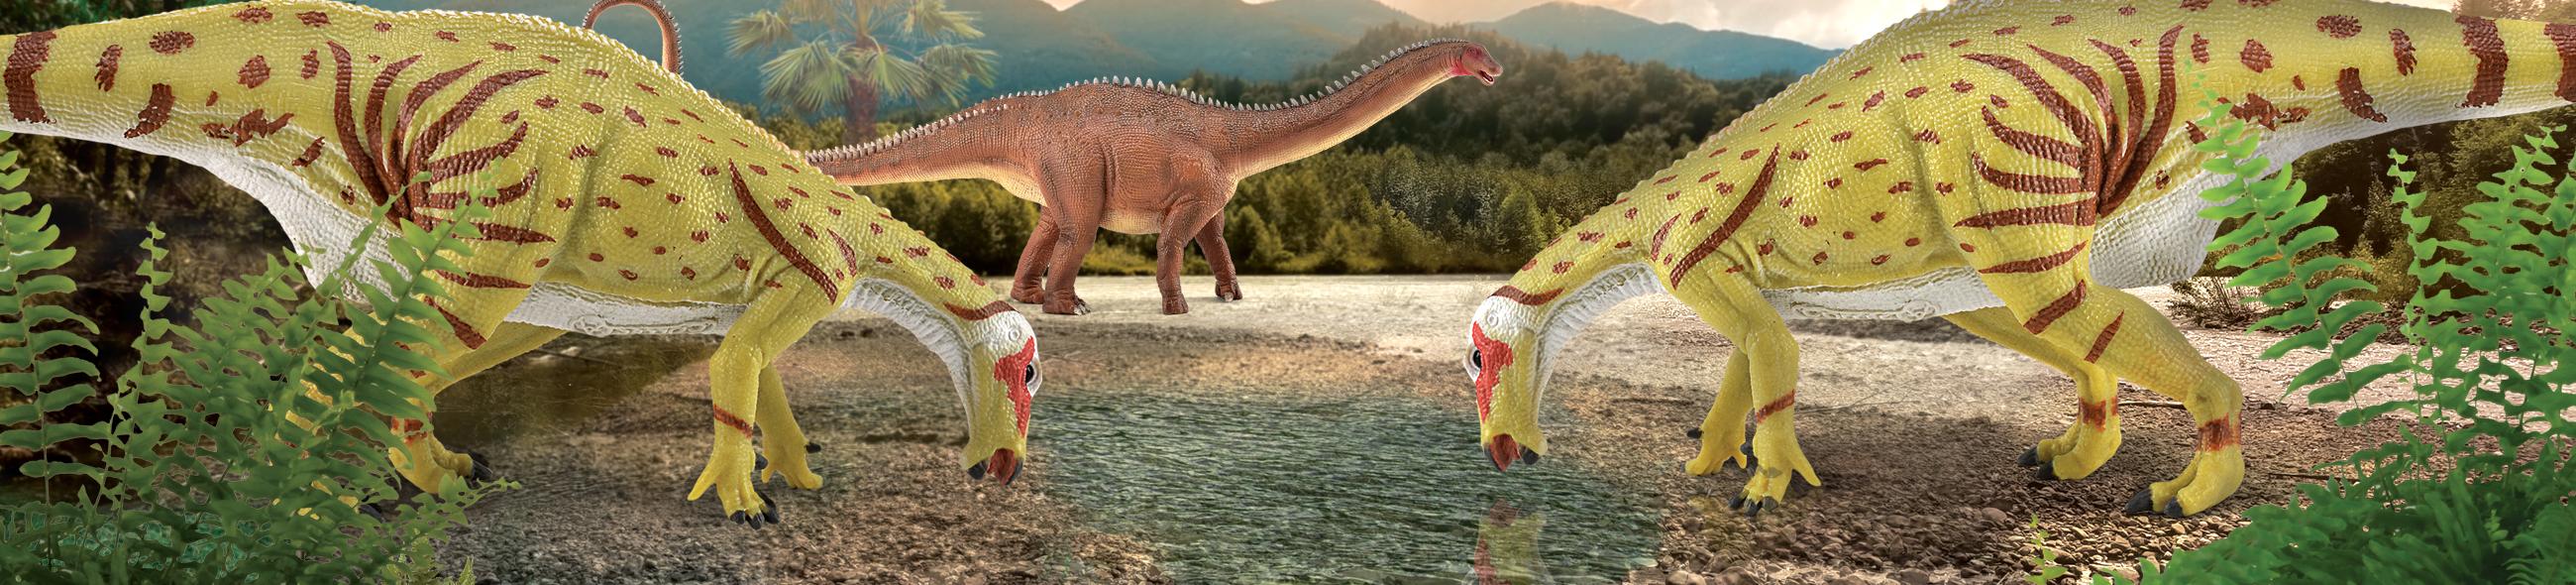 La Era de los Dinosauios Popular